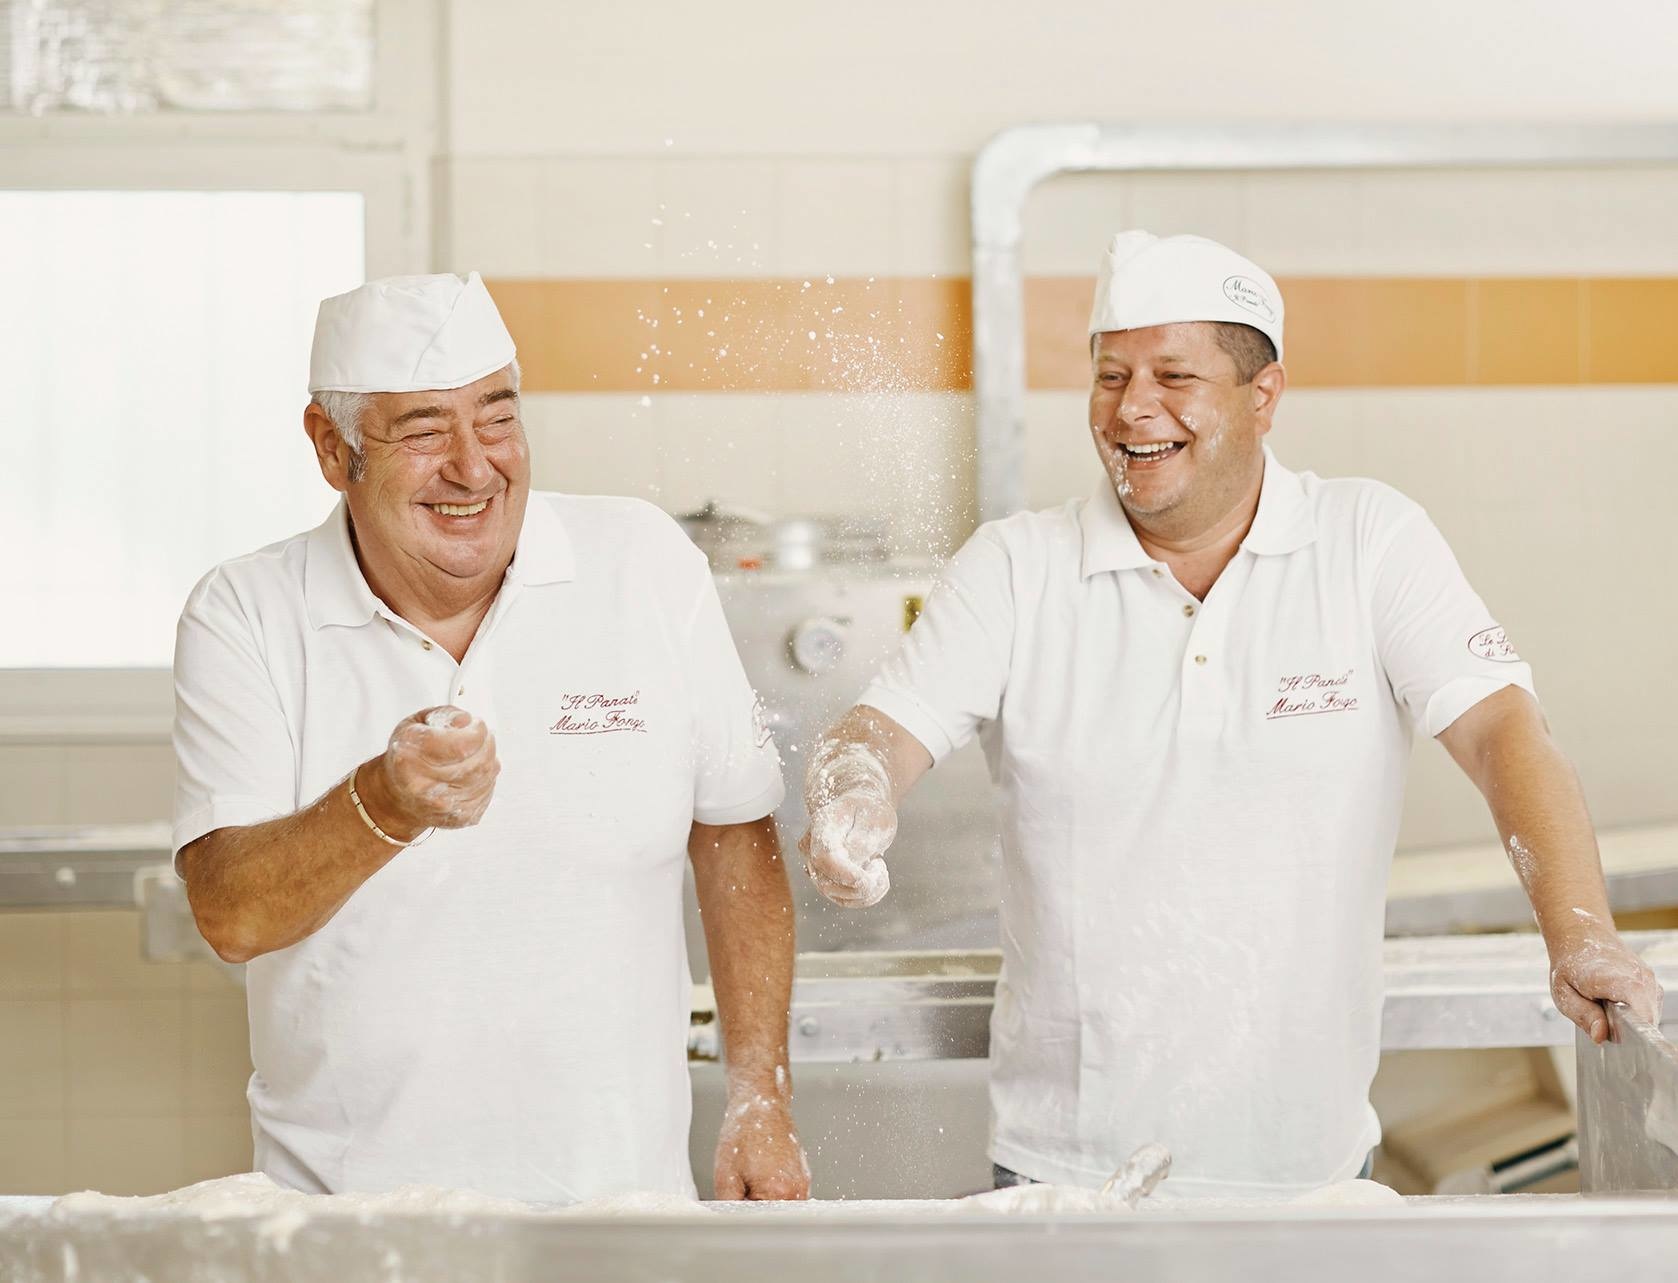 Mario Fongo Bâtonnets de pain étirés - IGP Oignon ''Tropea'' 200g